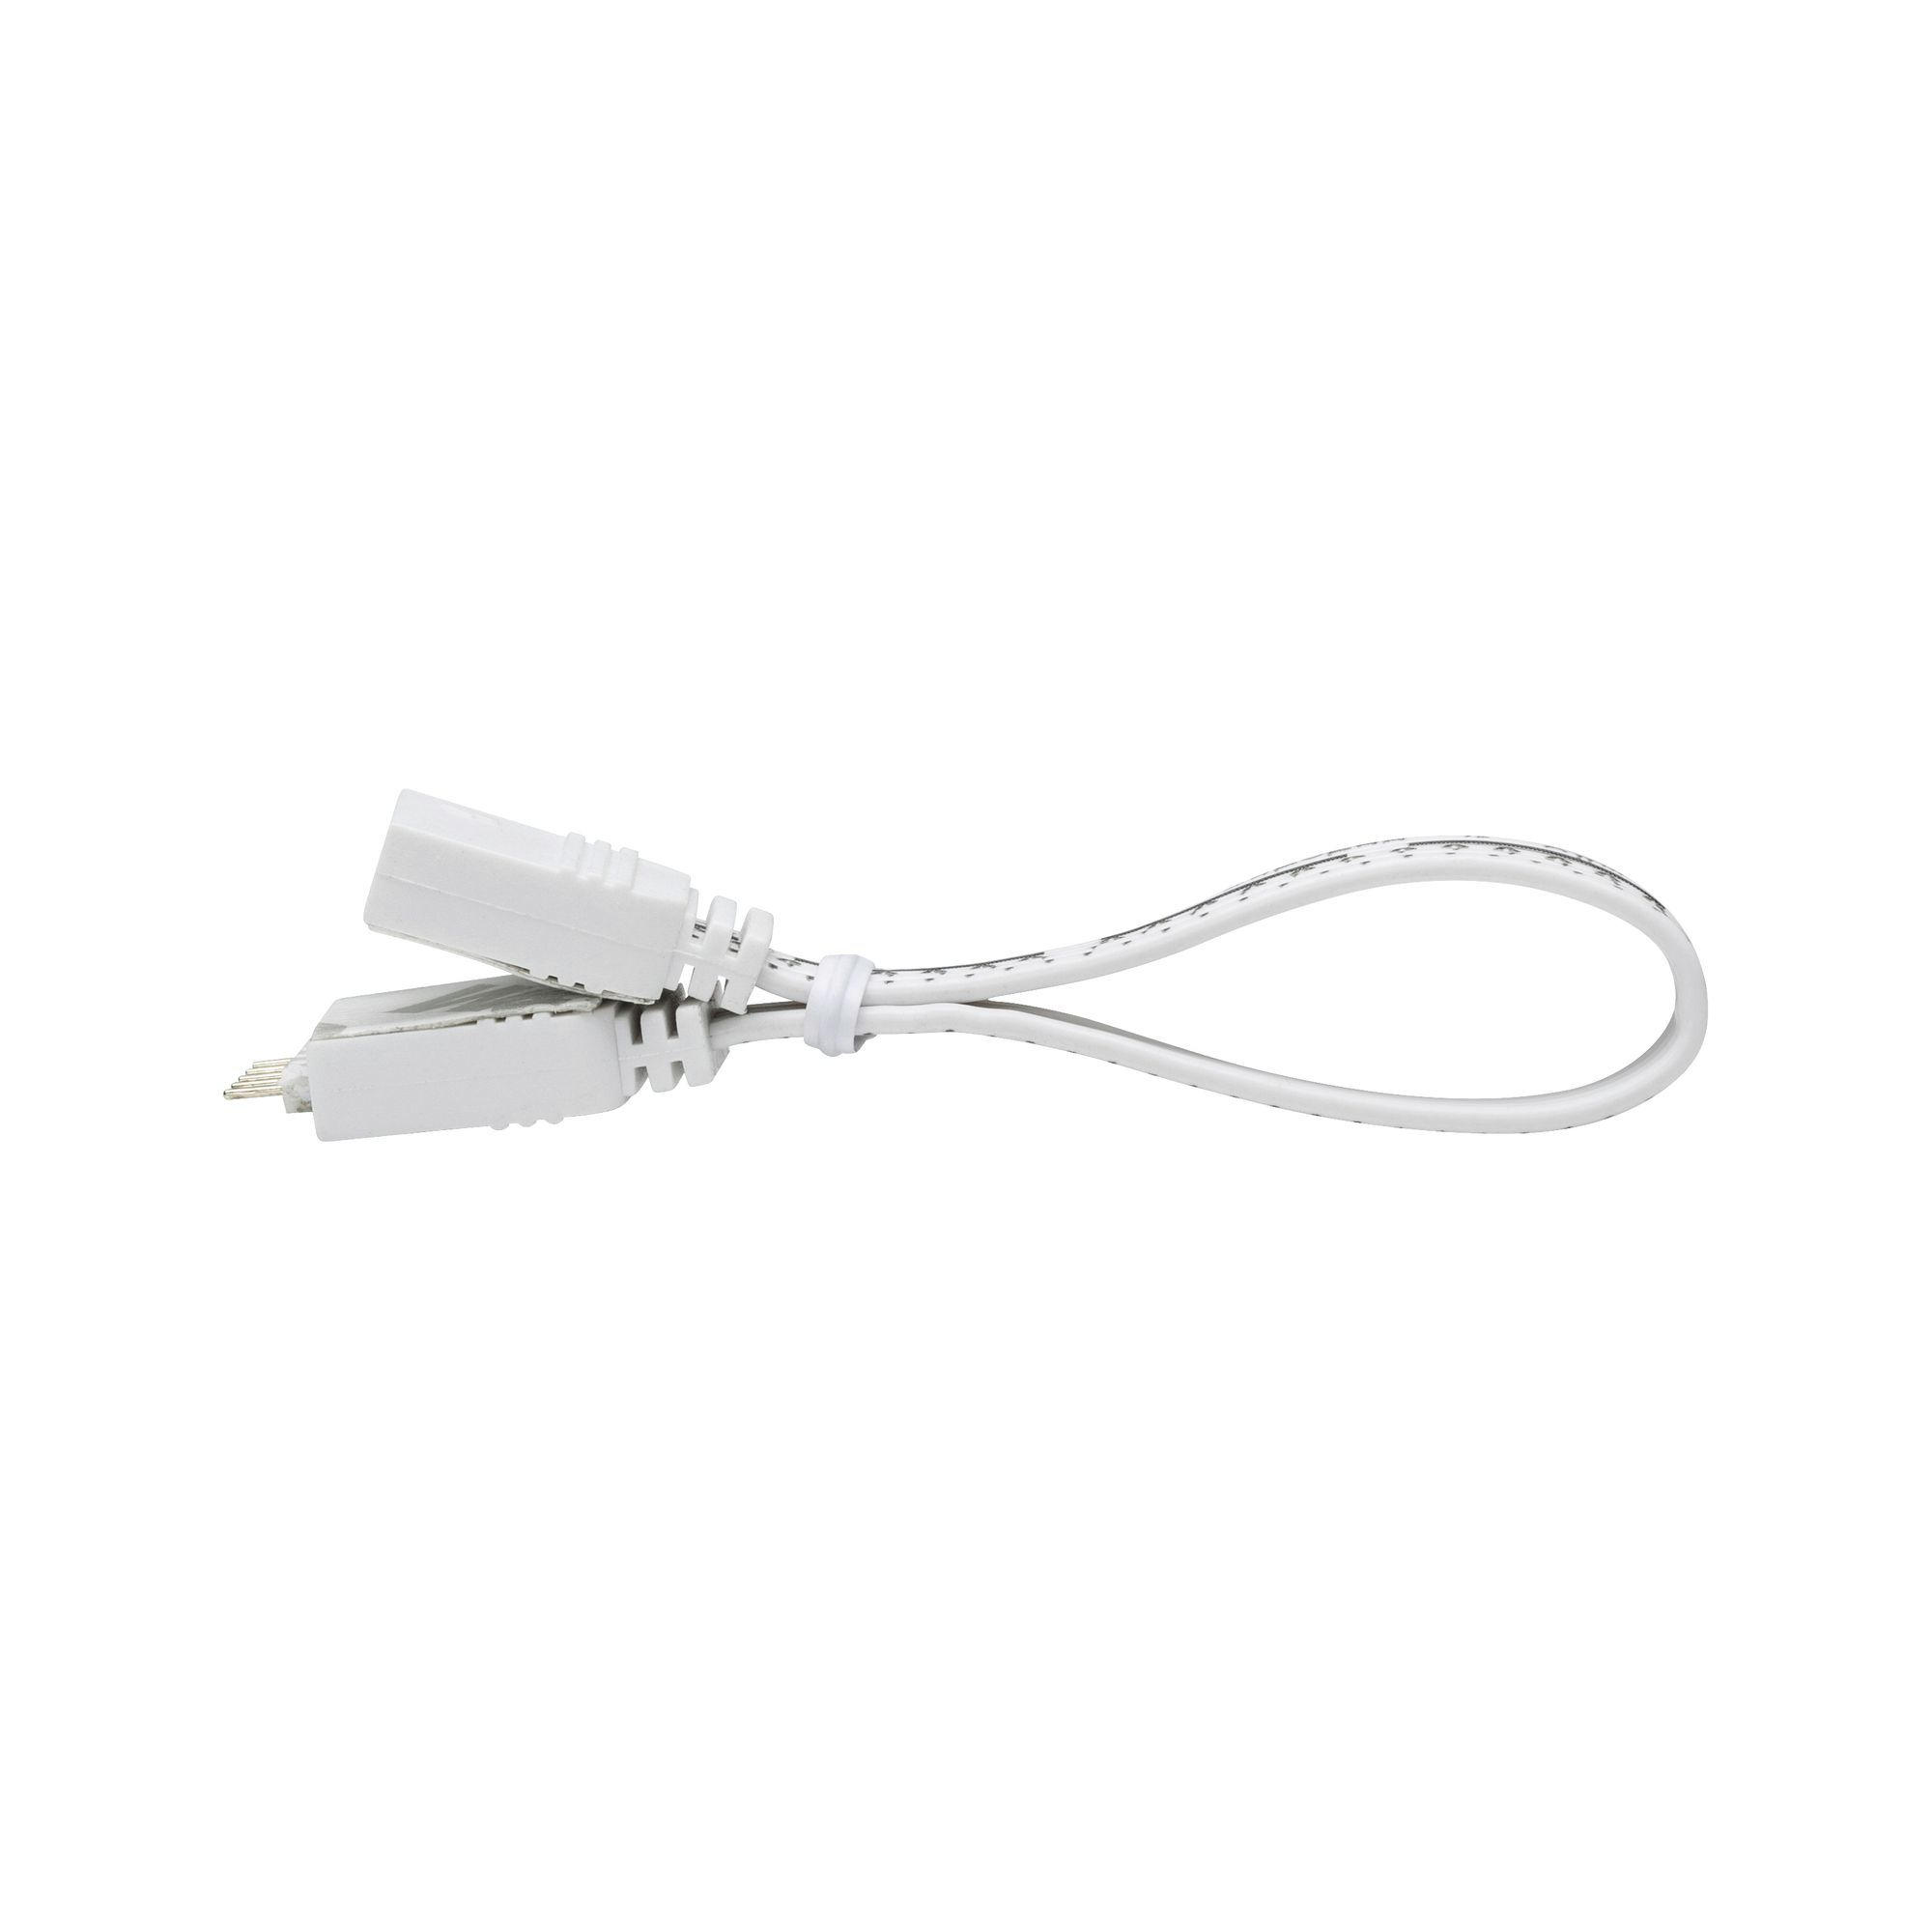 LED-STRIP  - Weiß, Basics, Kunststoff (10/0,6cm) - Paulmann